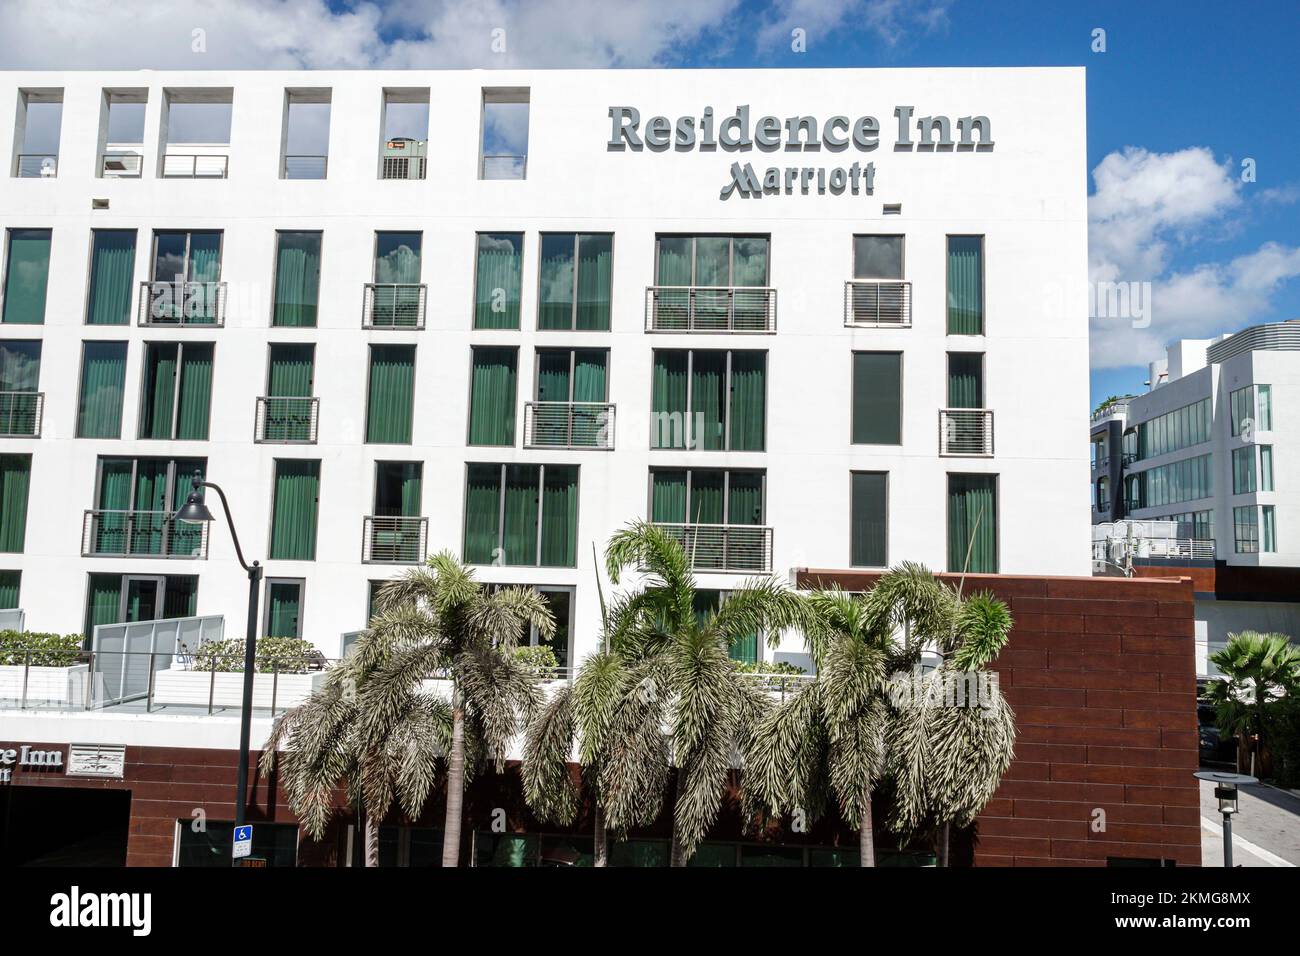 Hoteles en Miami Beach, Florida, Residence Inn Marriott, alojamiento en posadas, moteles, fuera de los edificios de la entrada frontal exterior Foto de stock